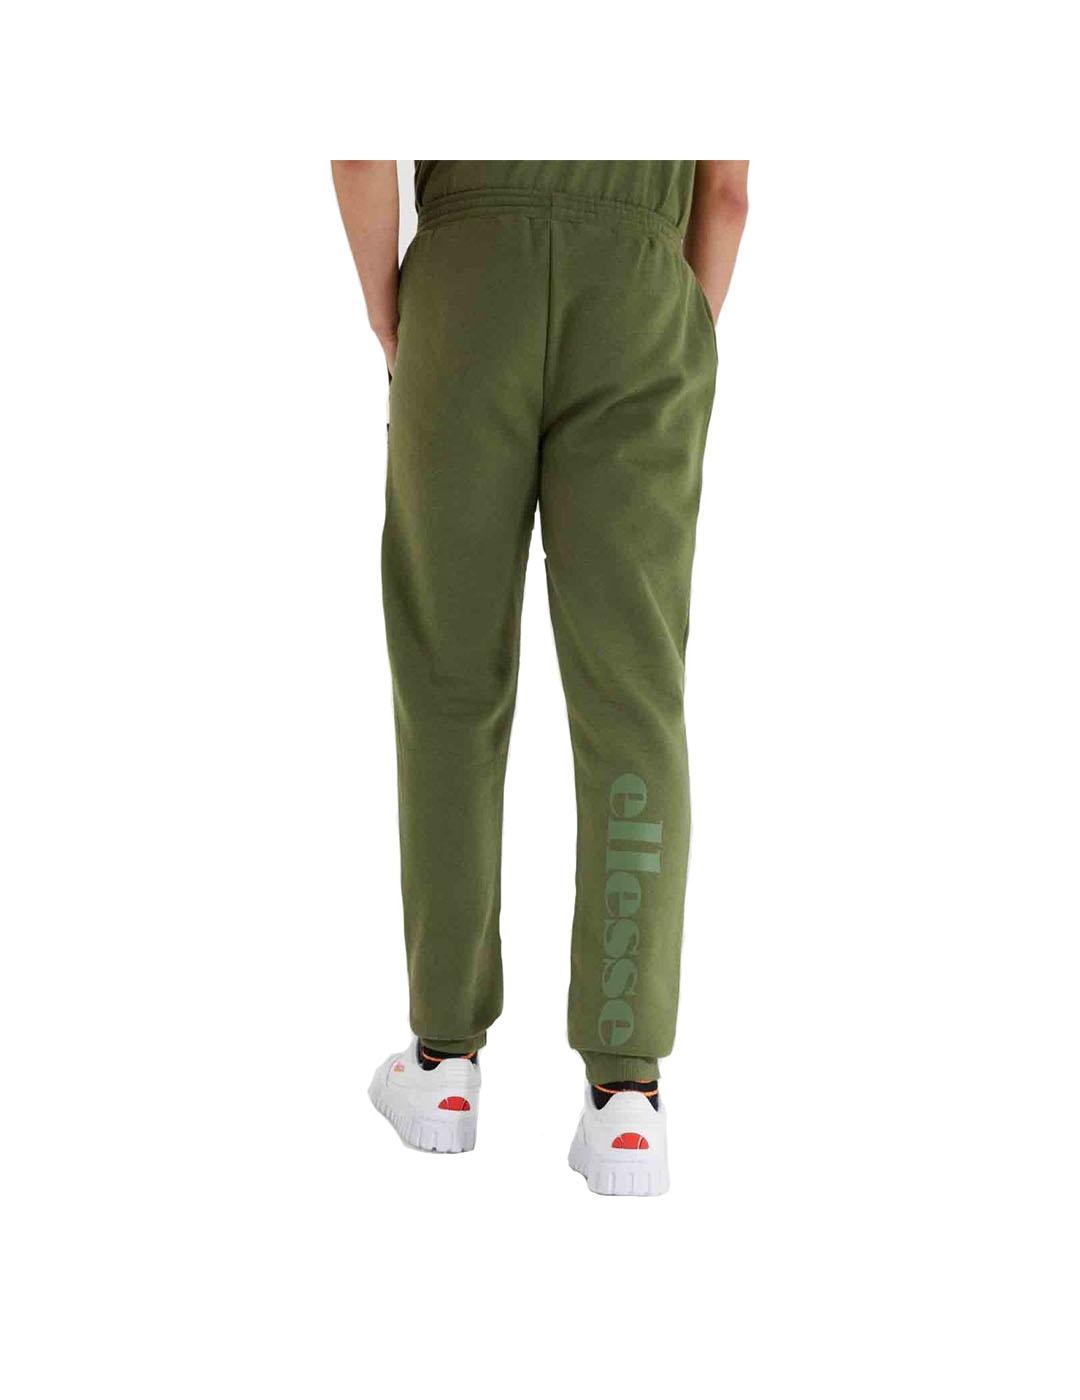 Pantalon Hombre Ellesse Eques Verde